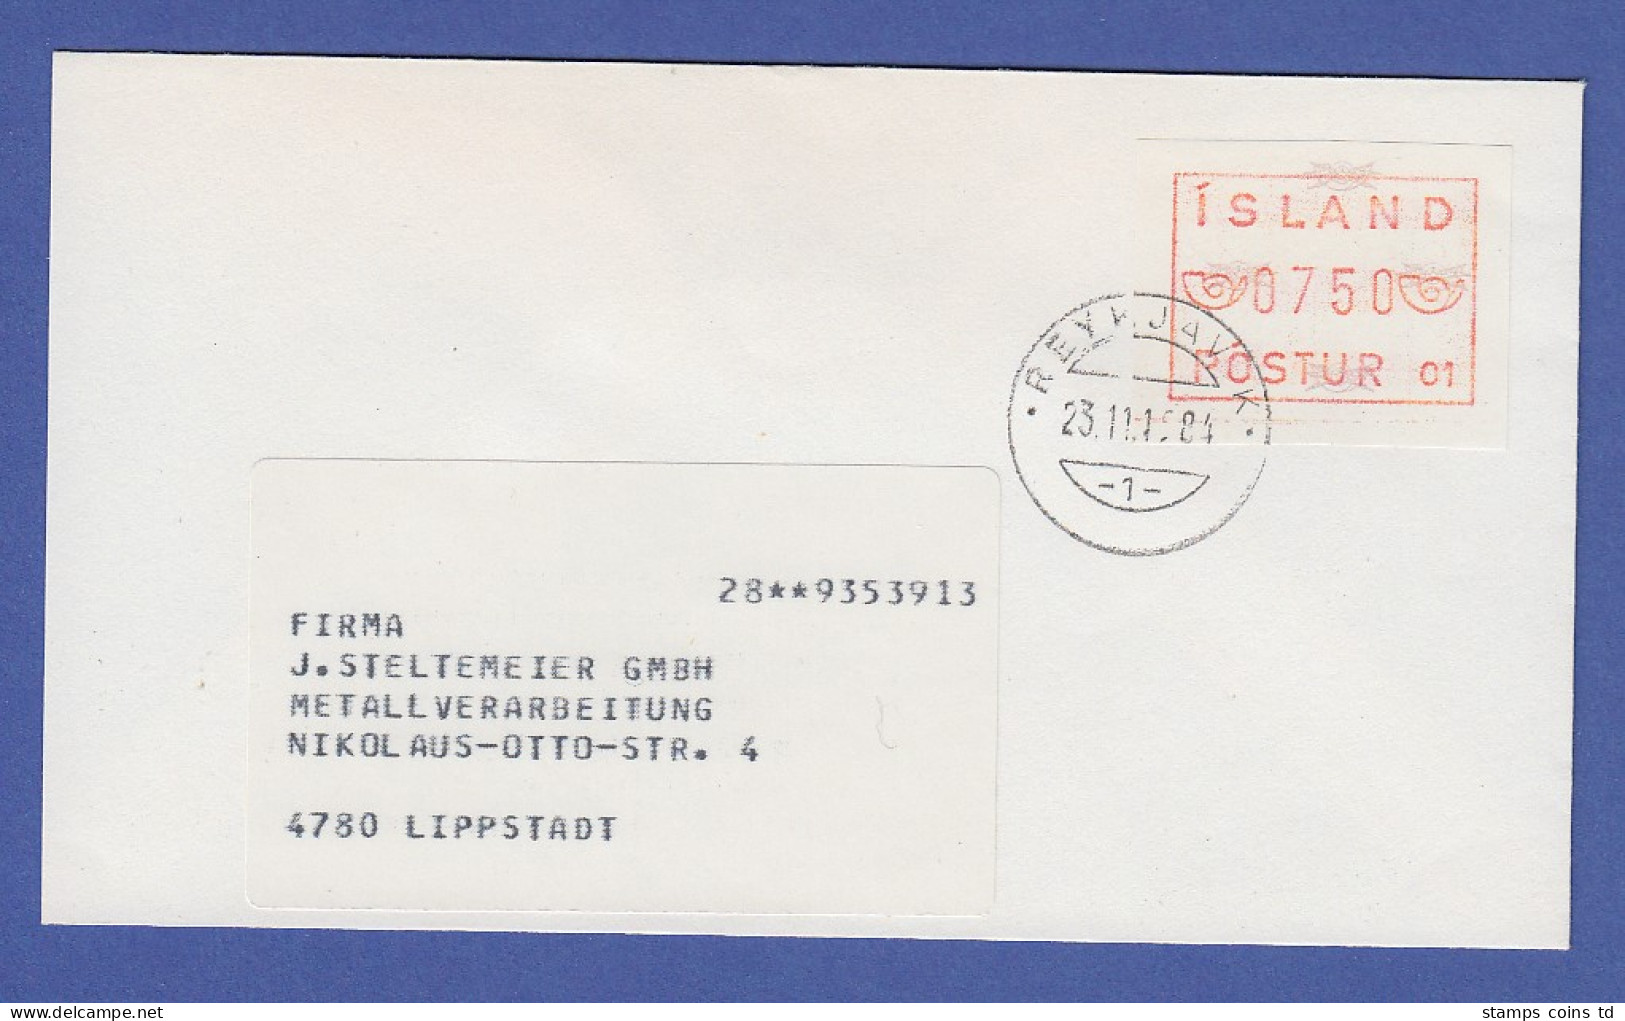 Island ATM Nr. 1 Aut.-Nr. 01 Wertstufe 750  Auf Brief Nach Lippstadt - Vignettes D'affranchissement (Frama)